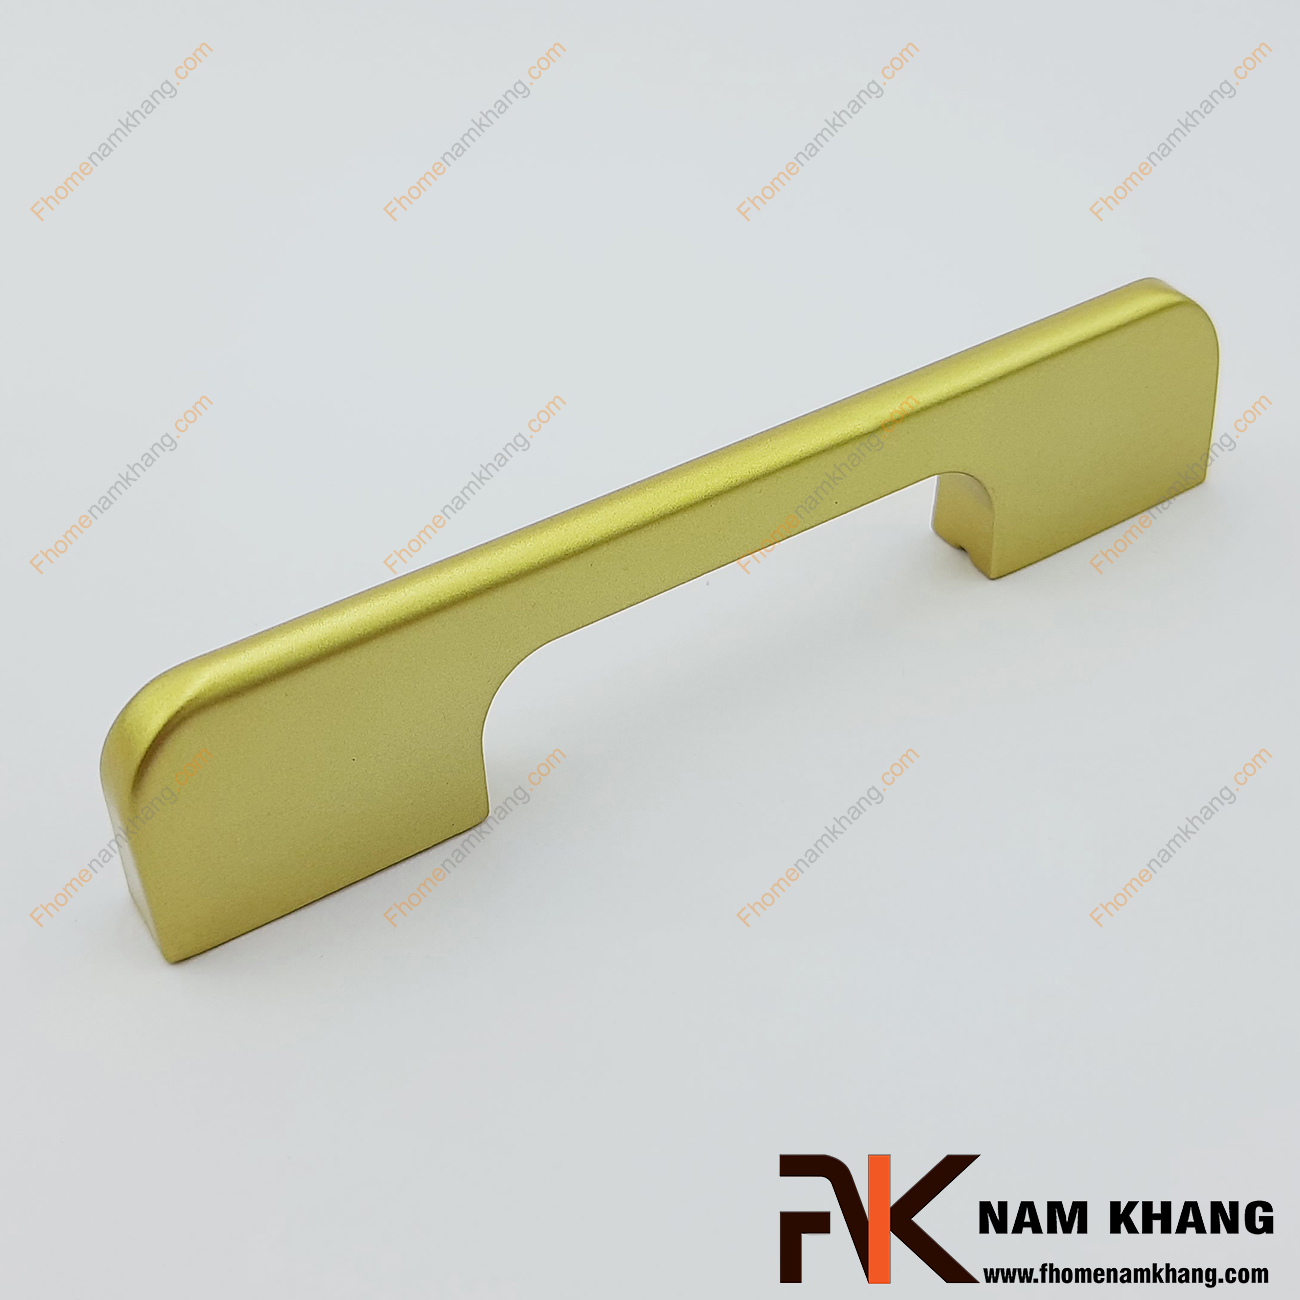 Tay nắm tủ dạng thanh màu vàng NK260-V là một dòng tay nắm tủ theo bộ với nhiều kích thước được sử dụng trên một hoặc nhiều loại phong cách tủ khác nhau tùy nhu cầu thiết kế